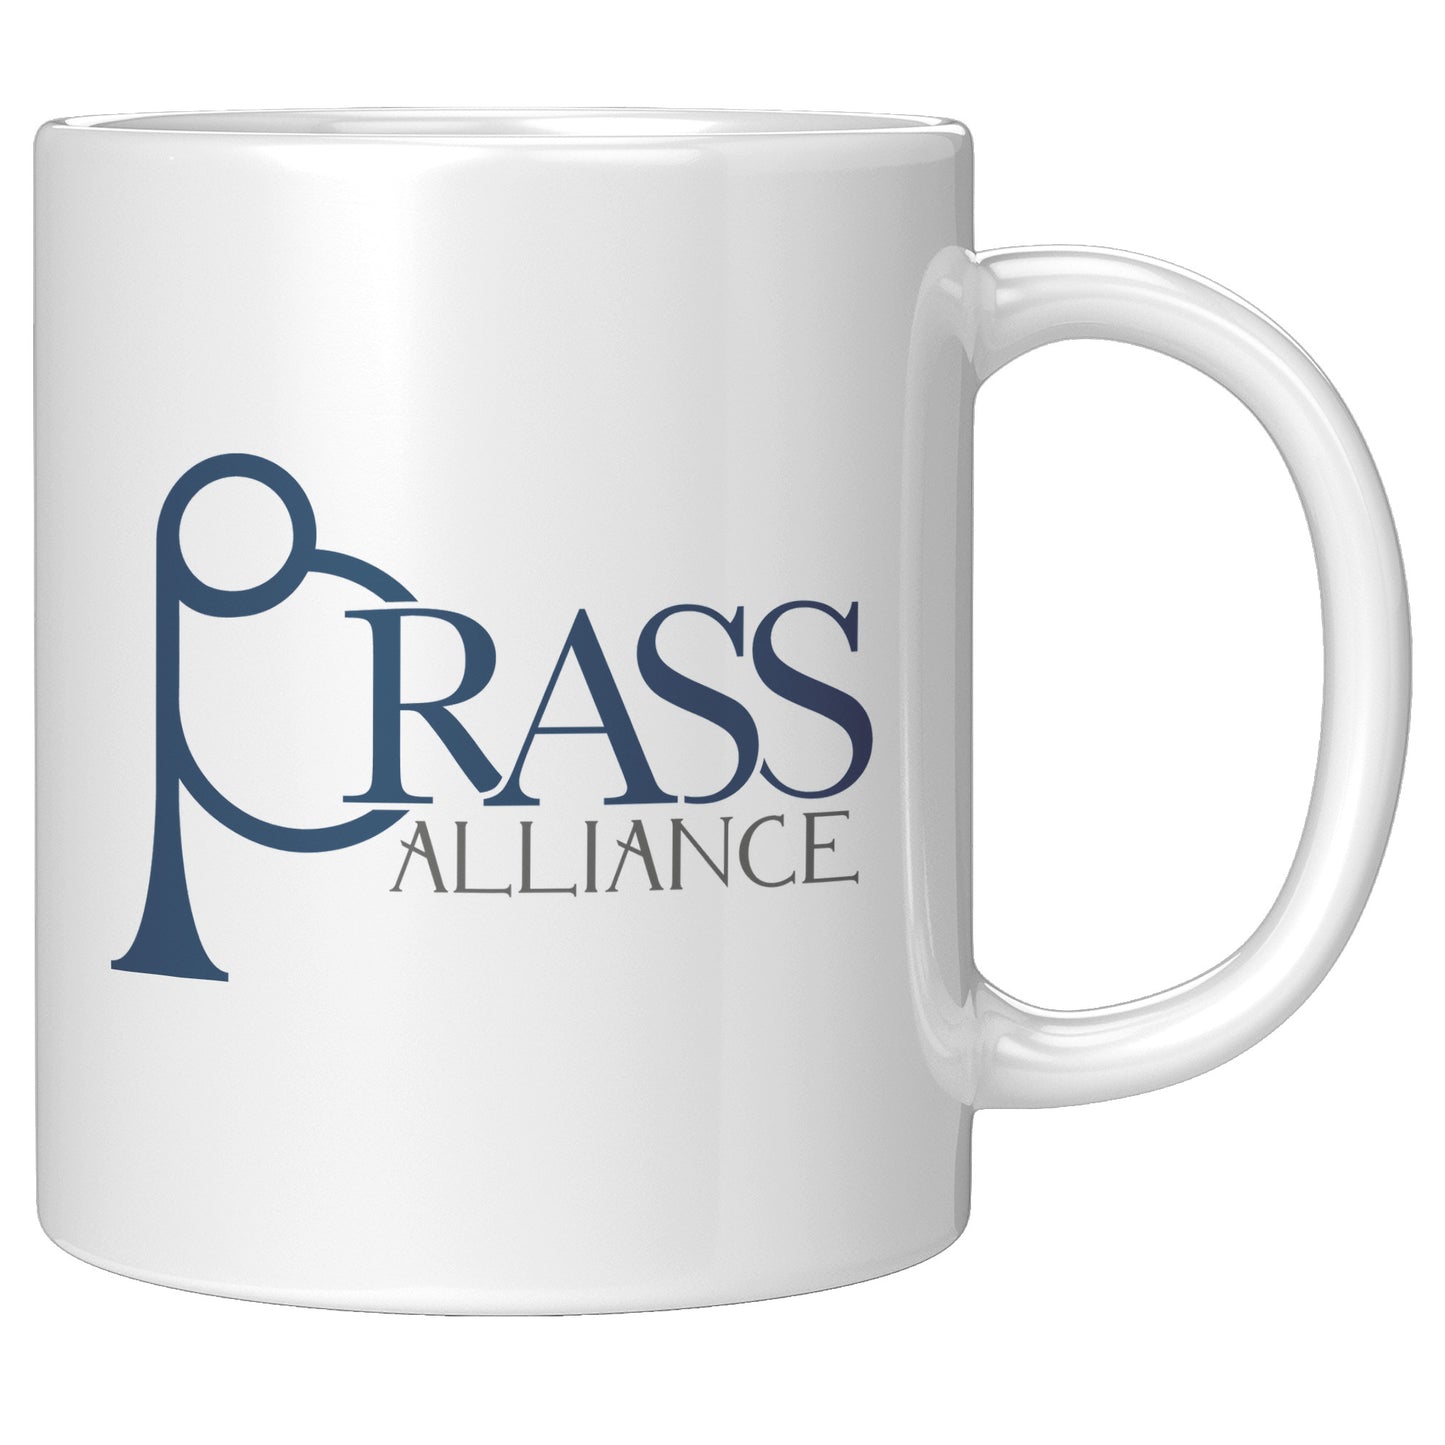 Brass Alliance Mugs